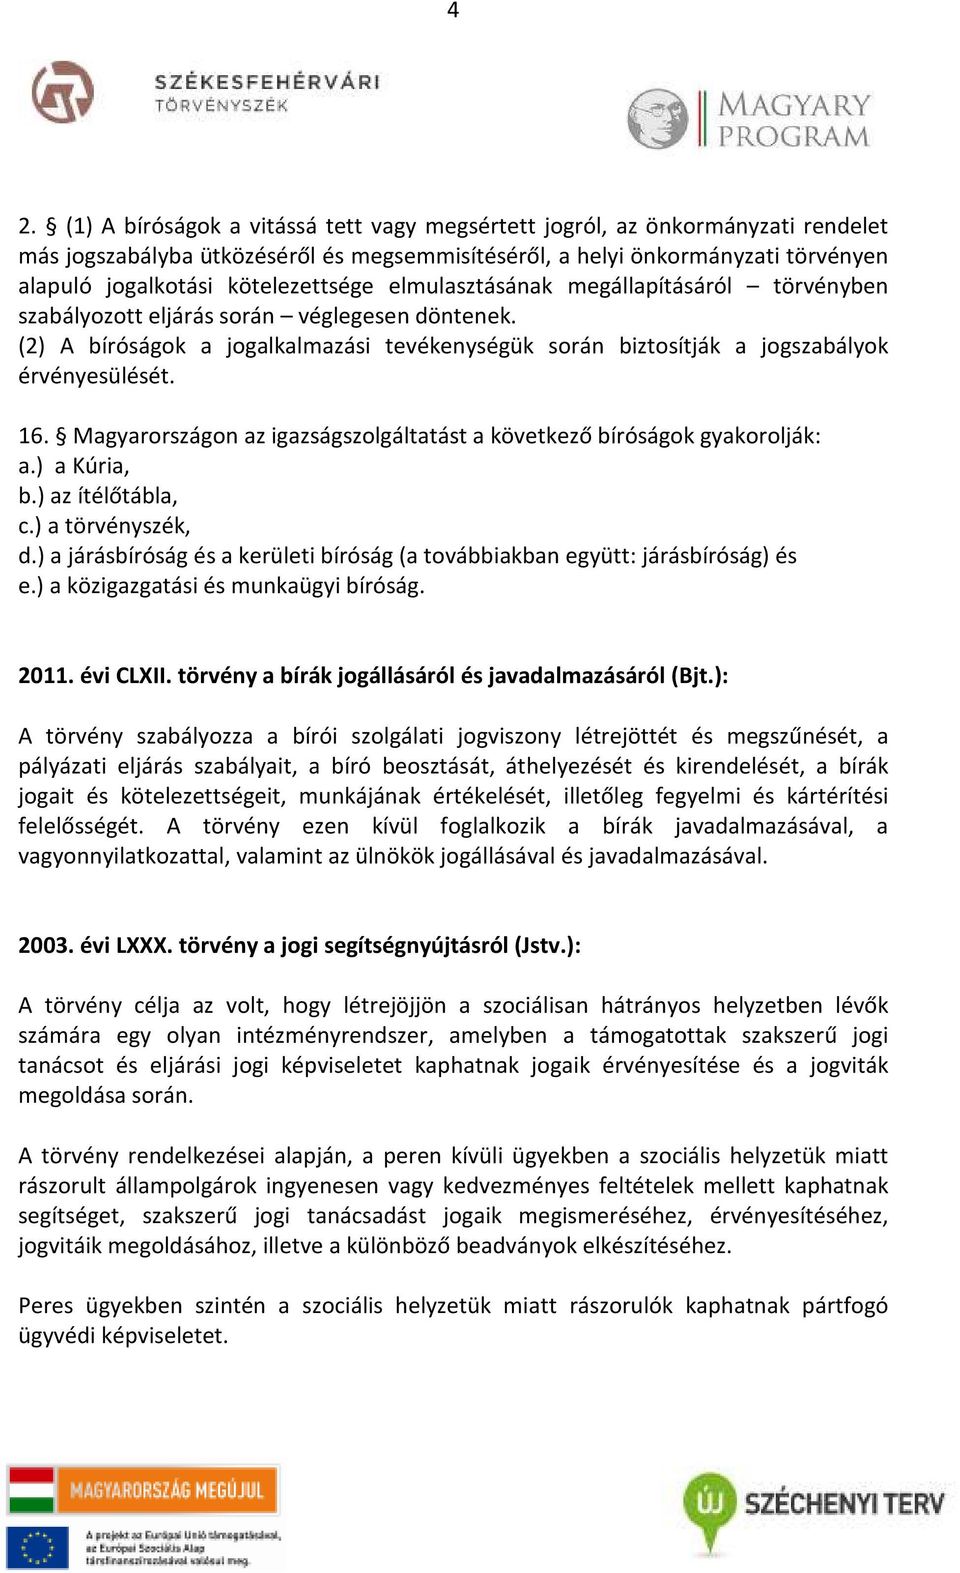 (2) A bíróságok a jogalkalmazási tevékenységük során biztosítják a jogszabályok érvényesülését. 16. Magyarországon az igazságszolgáltatást a következő bíróságok gyakorolják: a.) a Kúria, b.